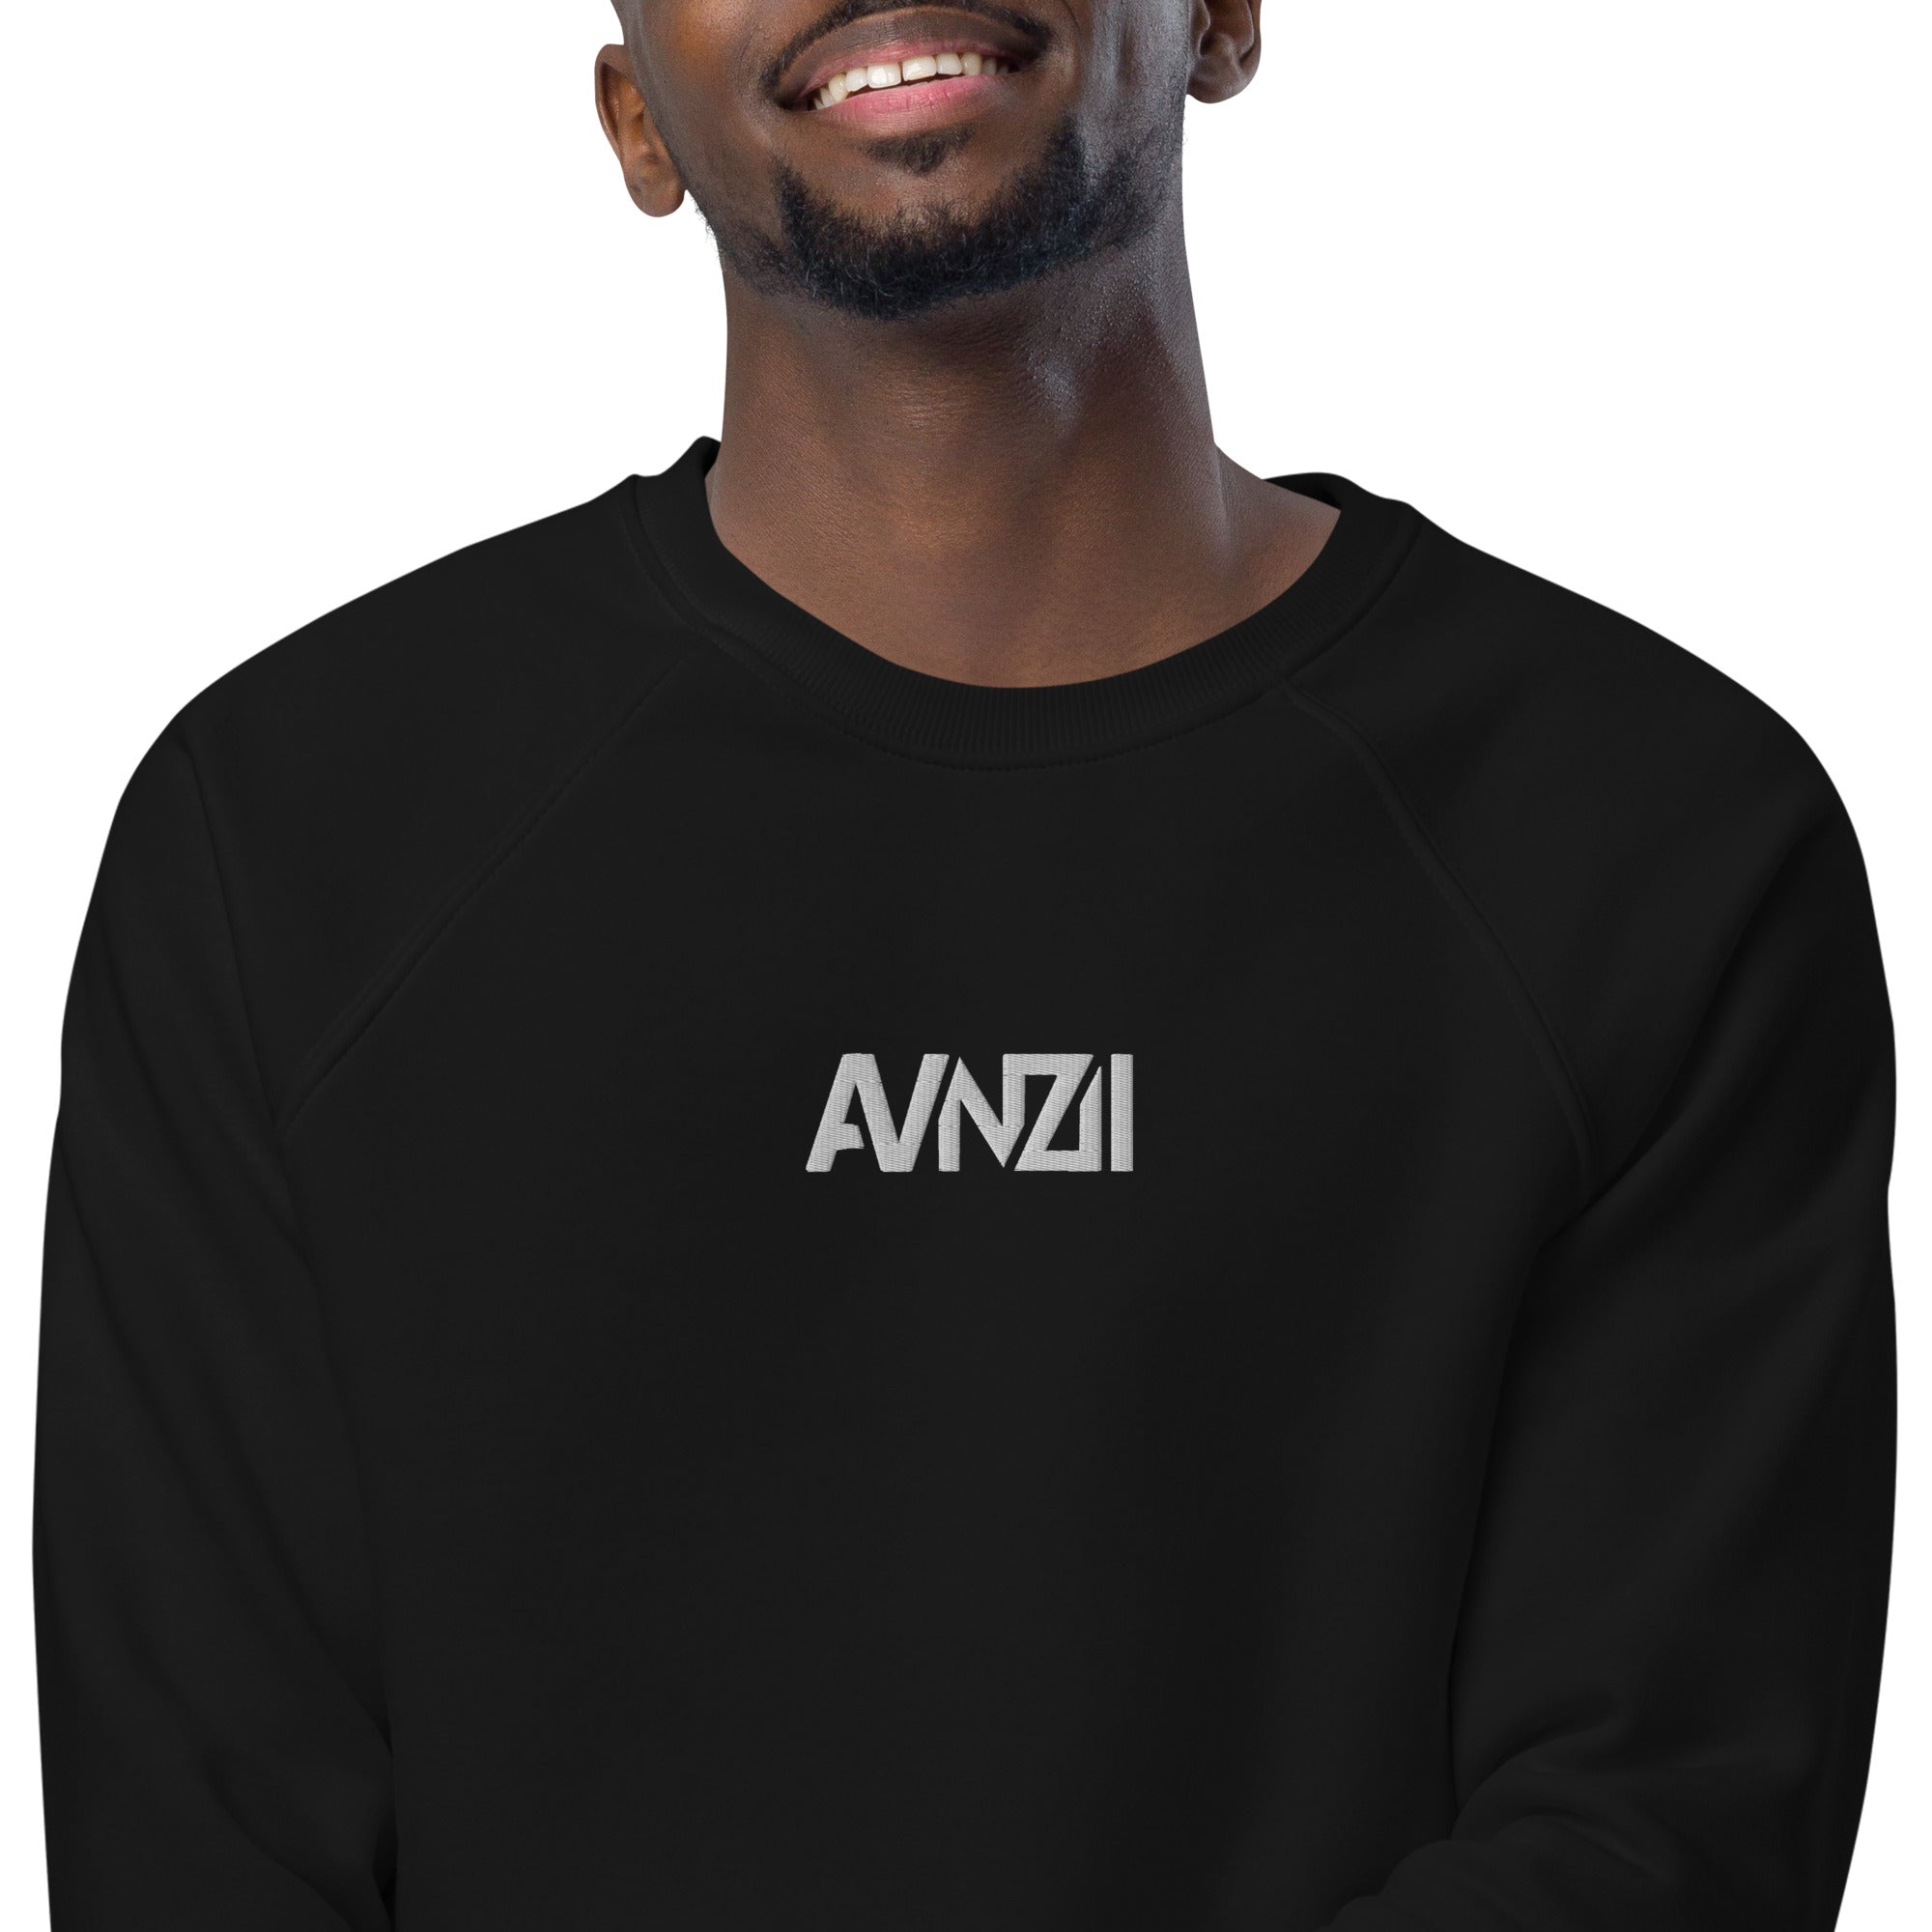 AVNZII - Unisex-Bio-Sweatshirt mit Stick